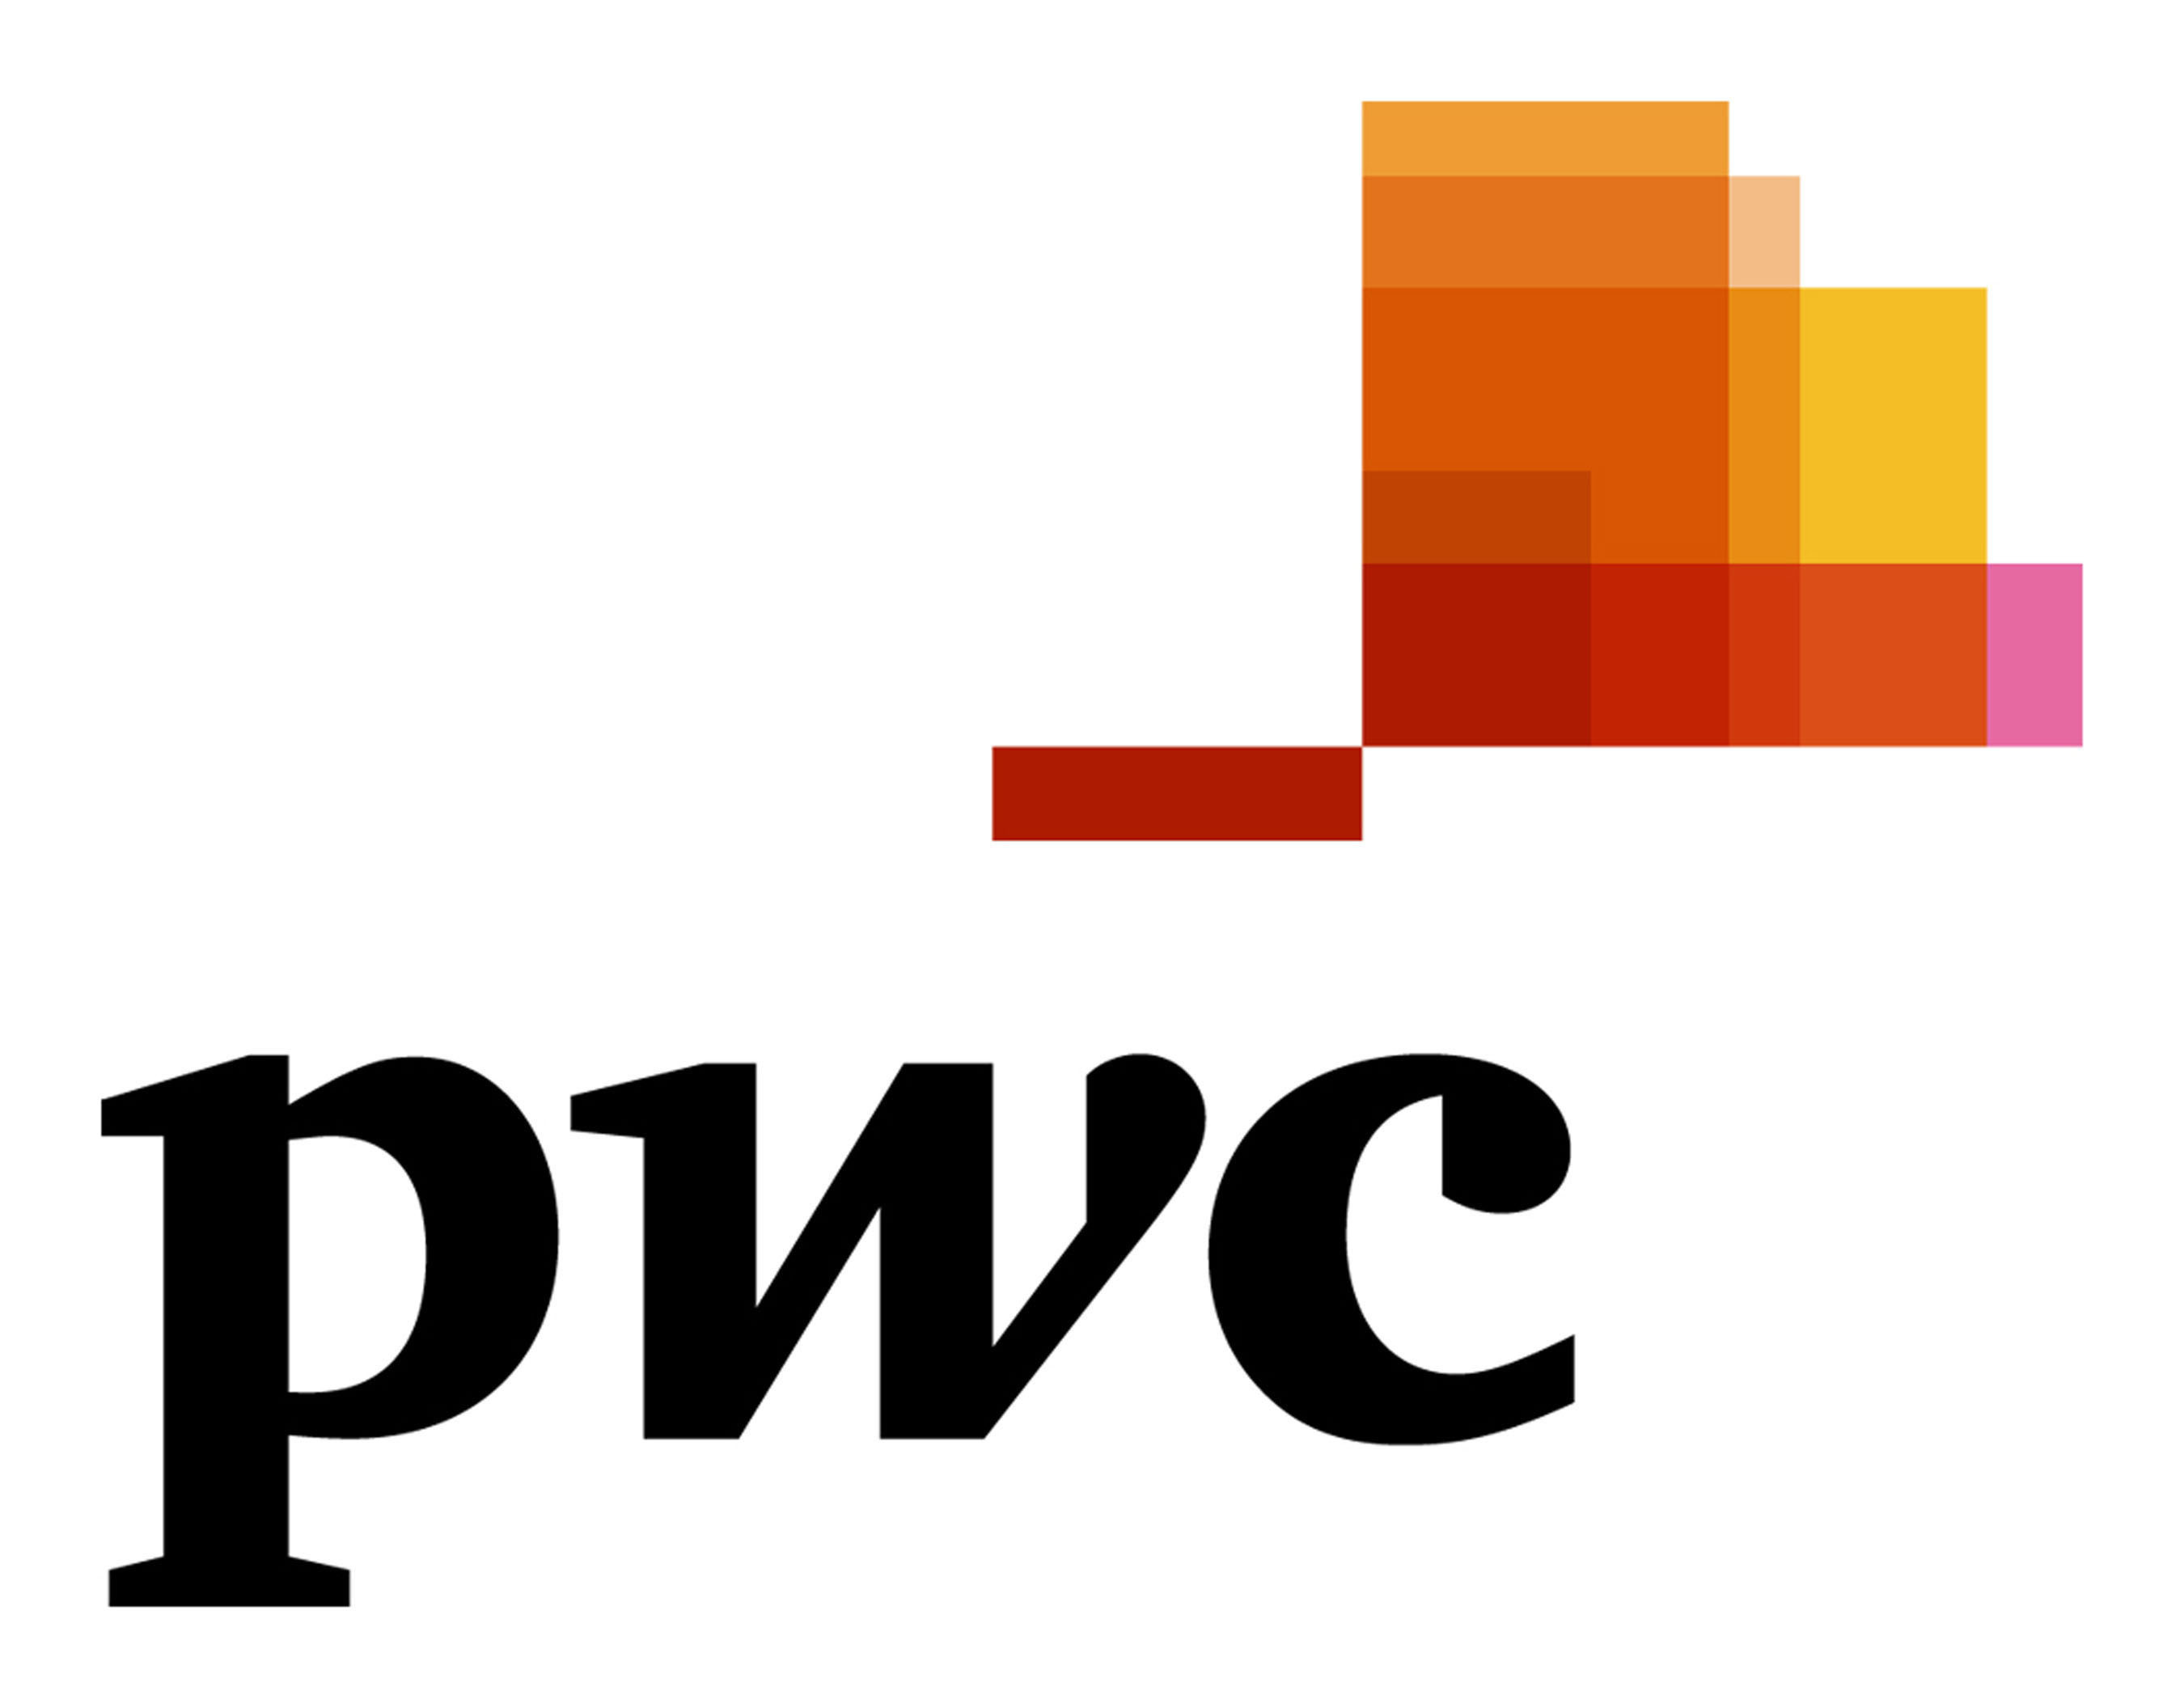 PwC logo.